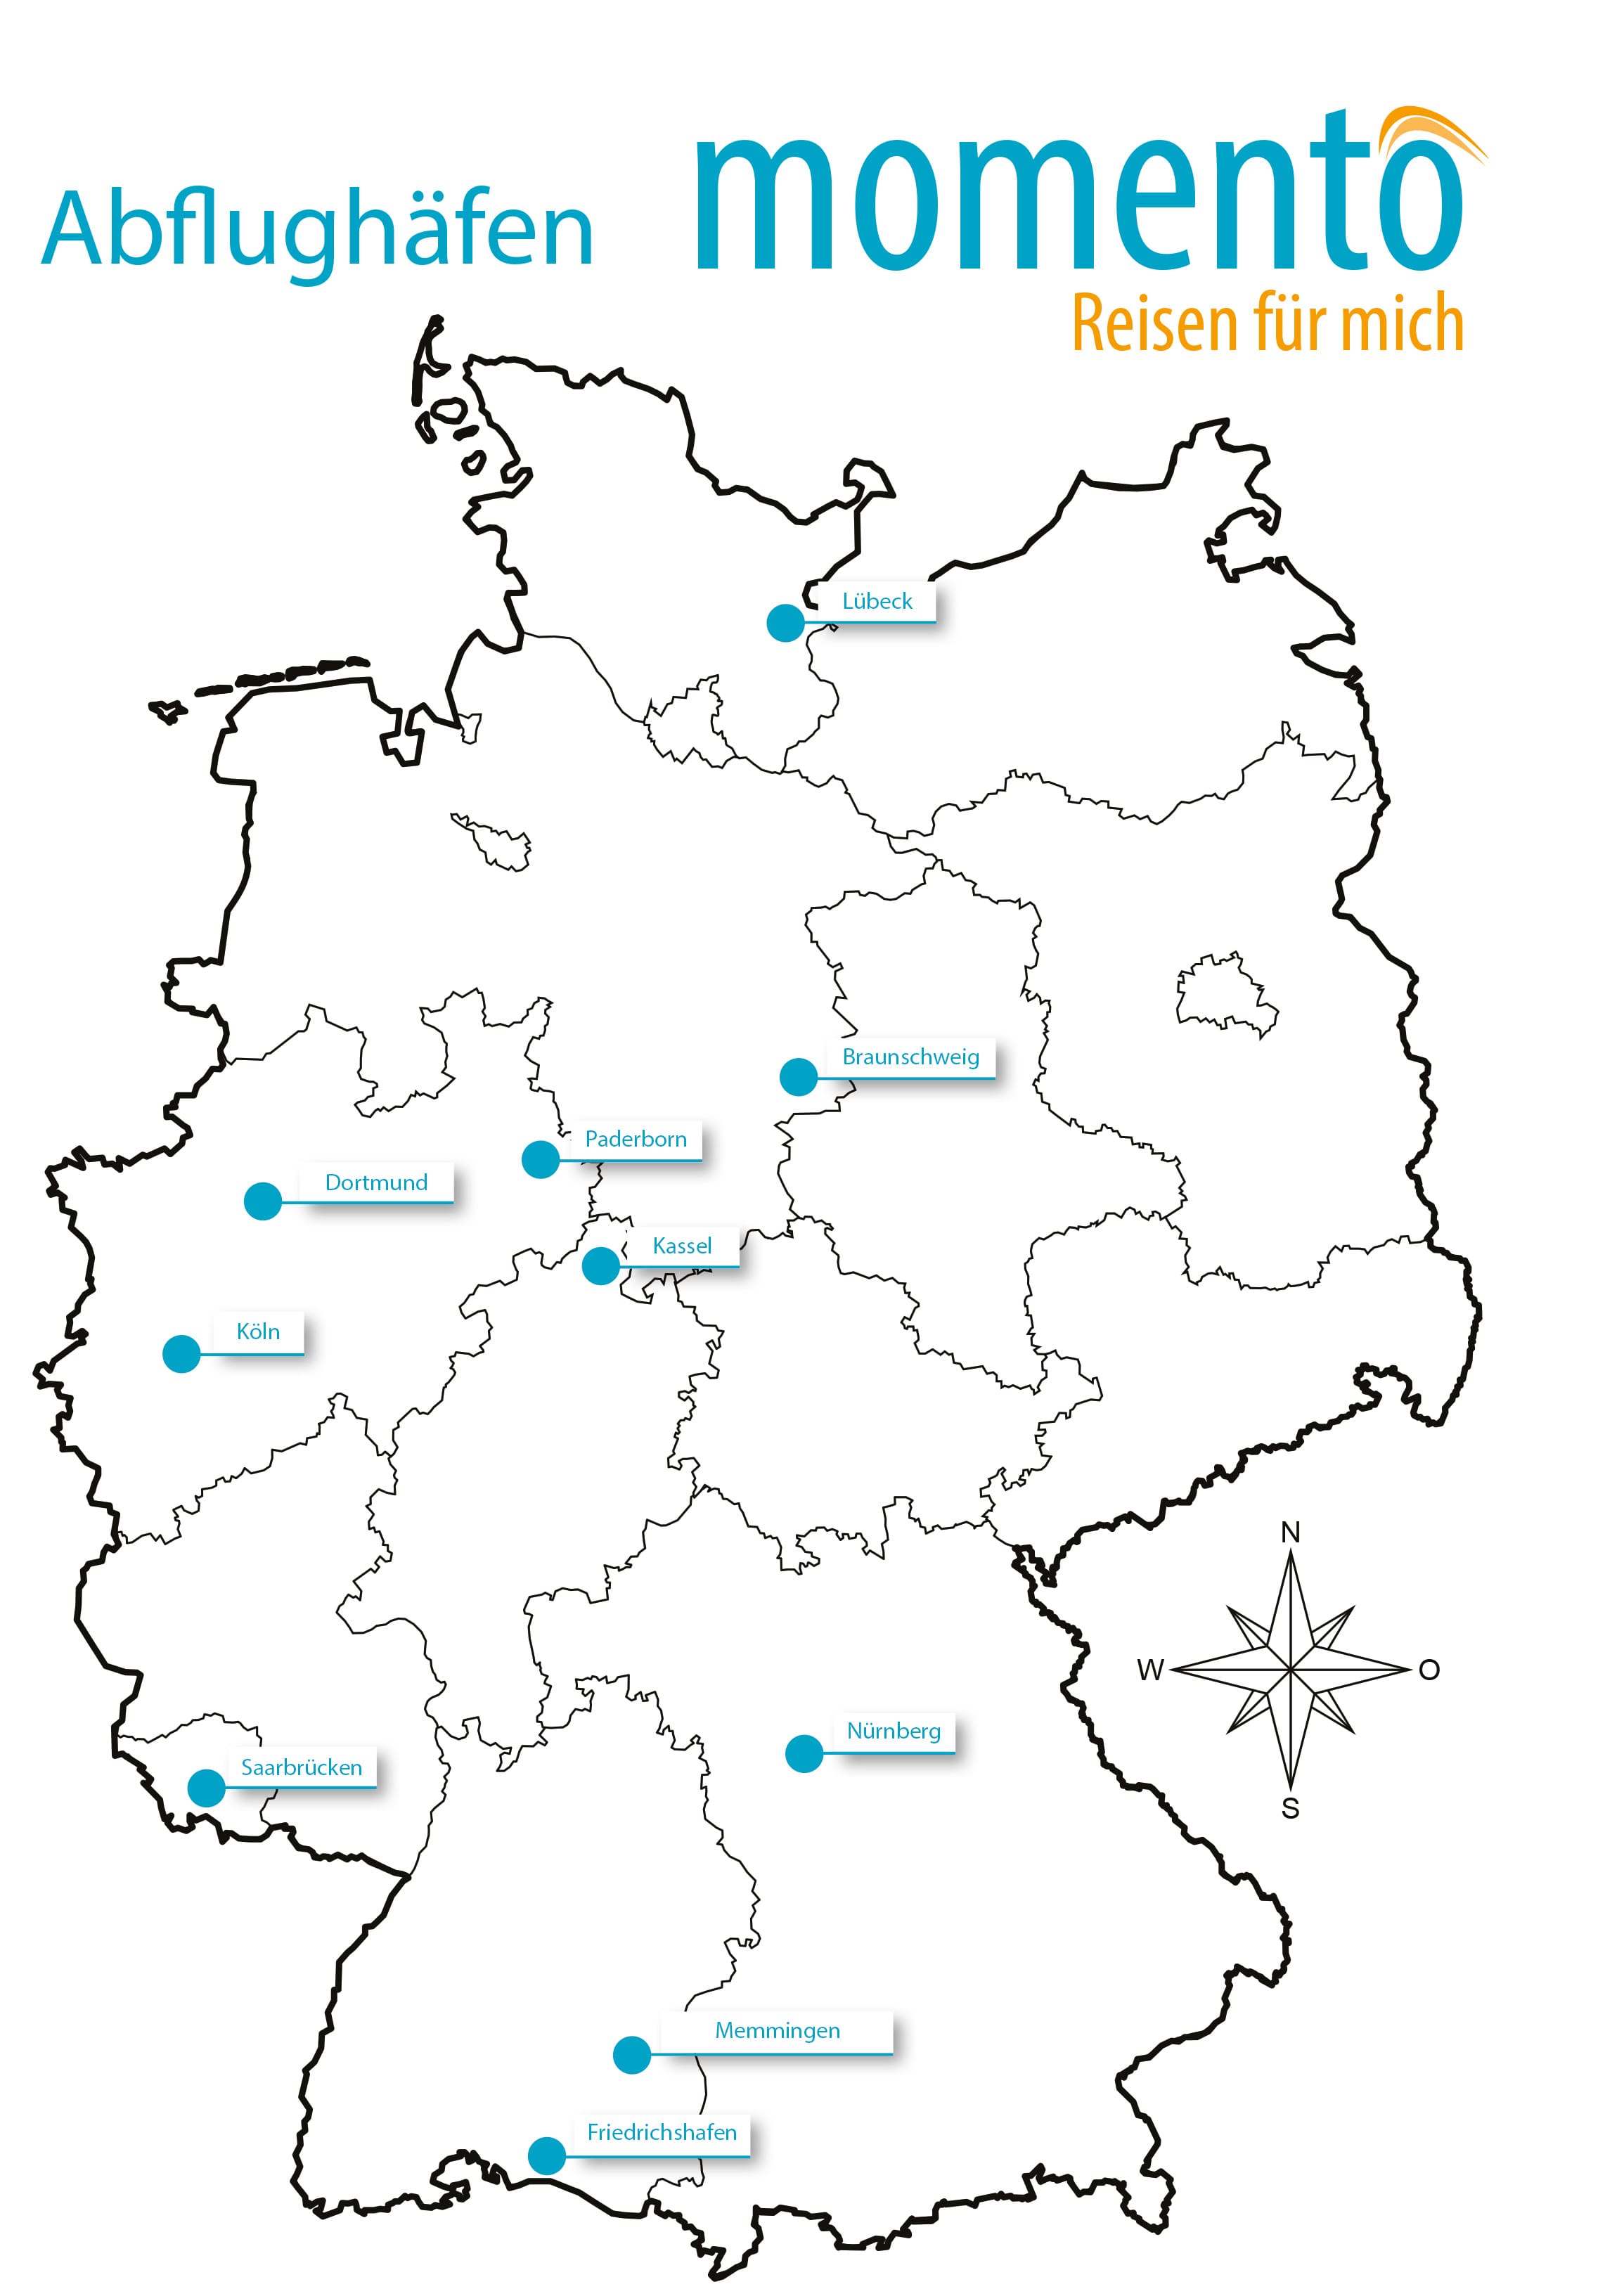 Abflughäfen in Deutschland - Stand 07 2019